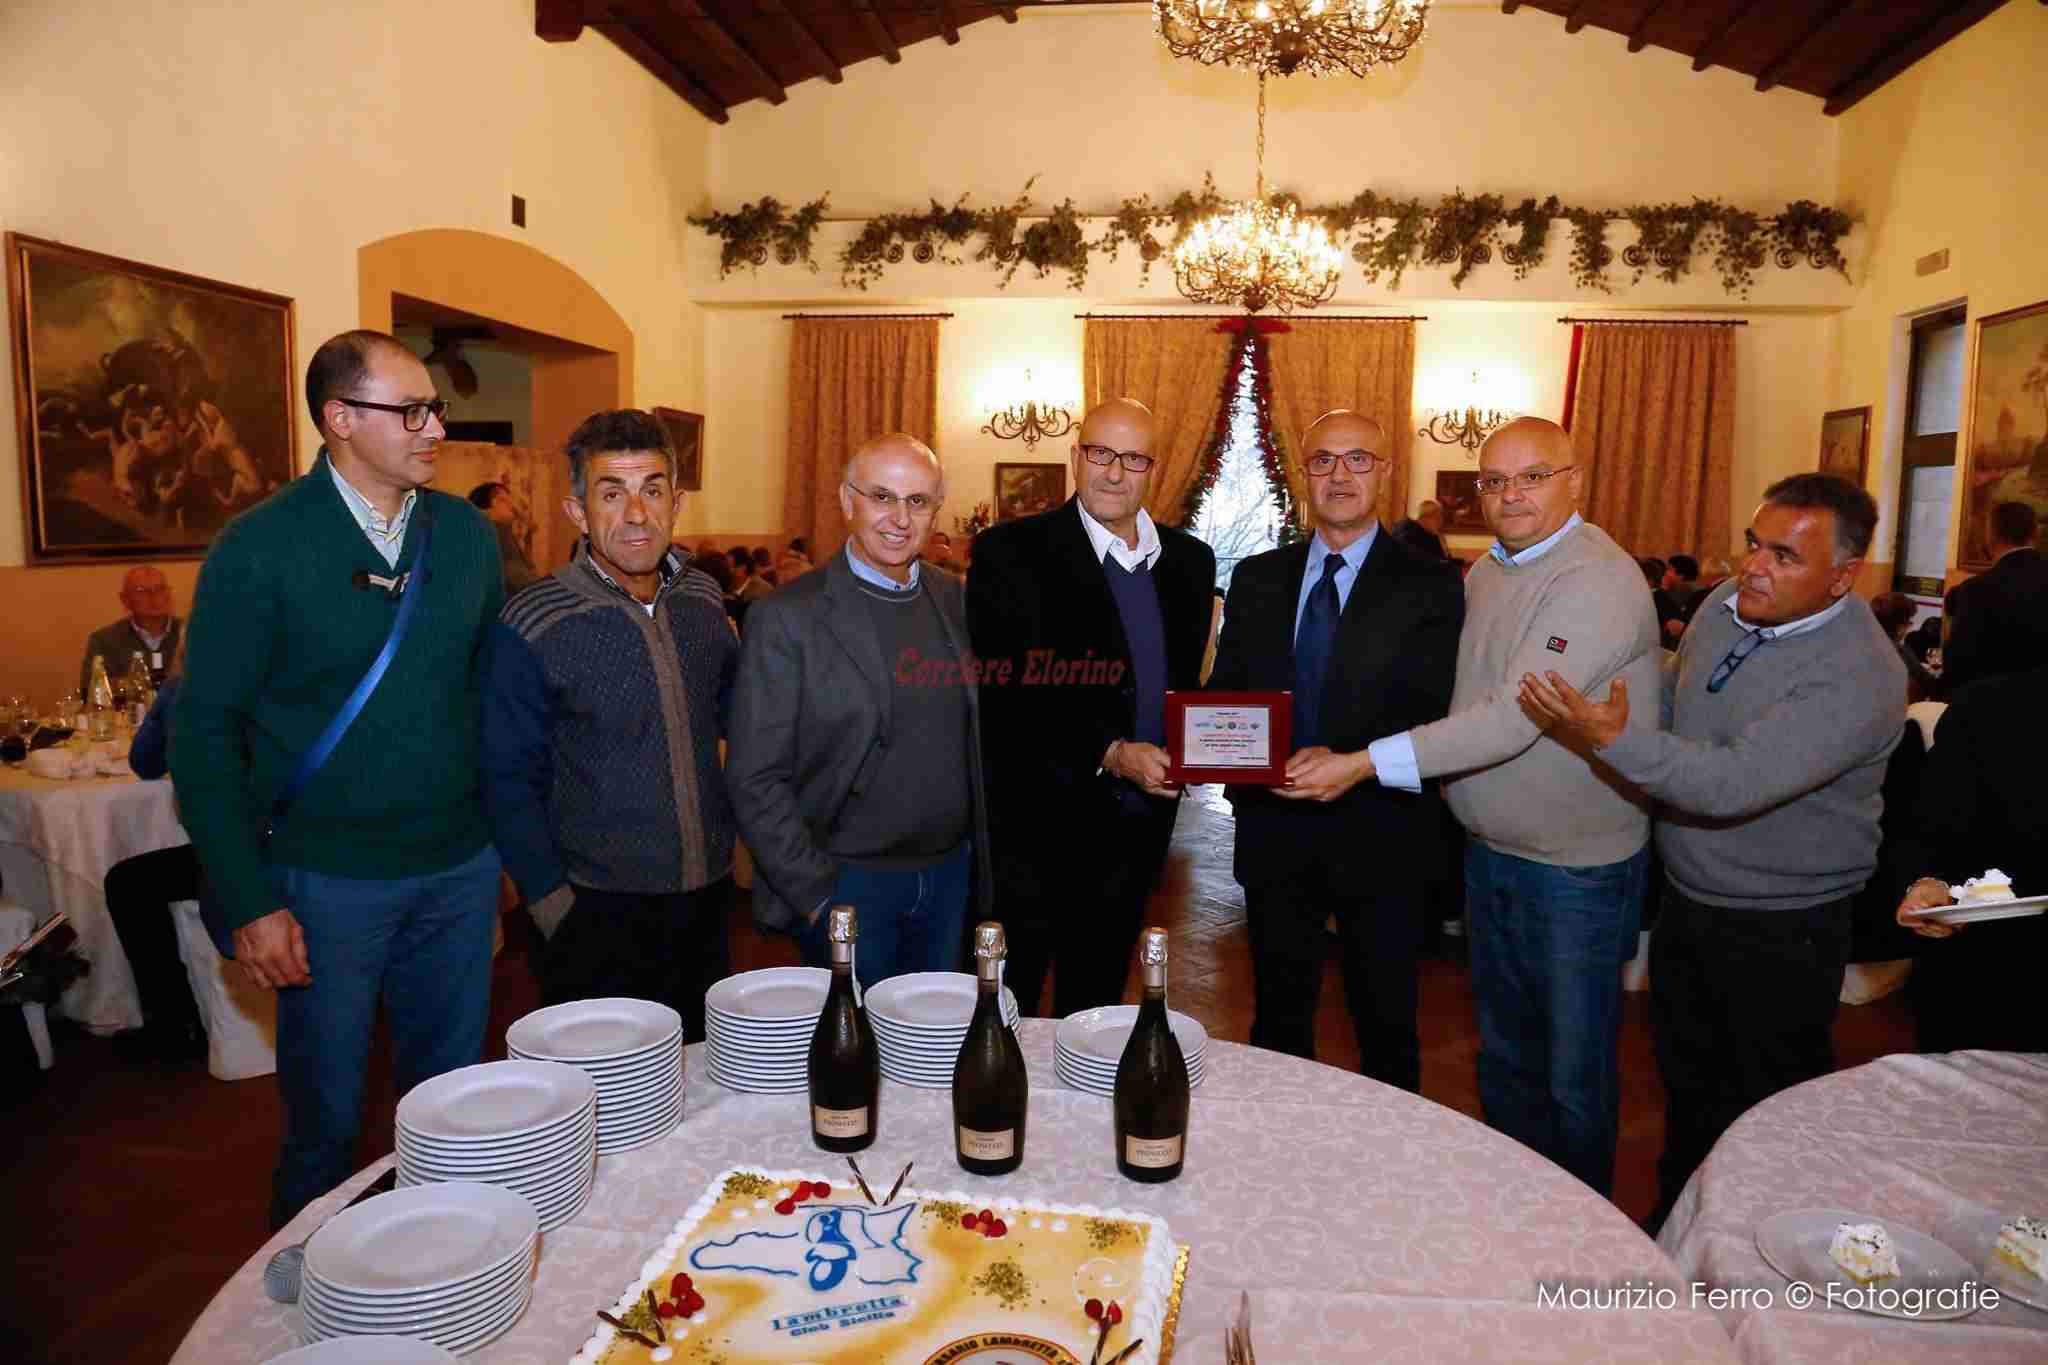 Il “Moto Club Lambretta Club Siracusa” presente al conviviale del “Lambretta Club Sicilia” a Castelvetrano